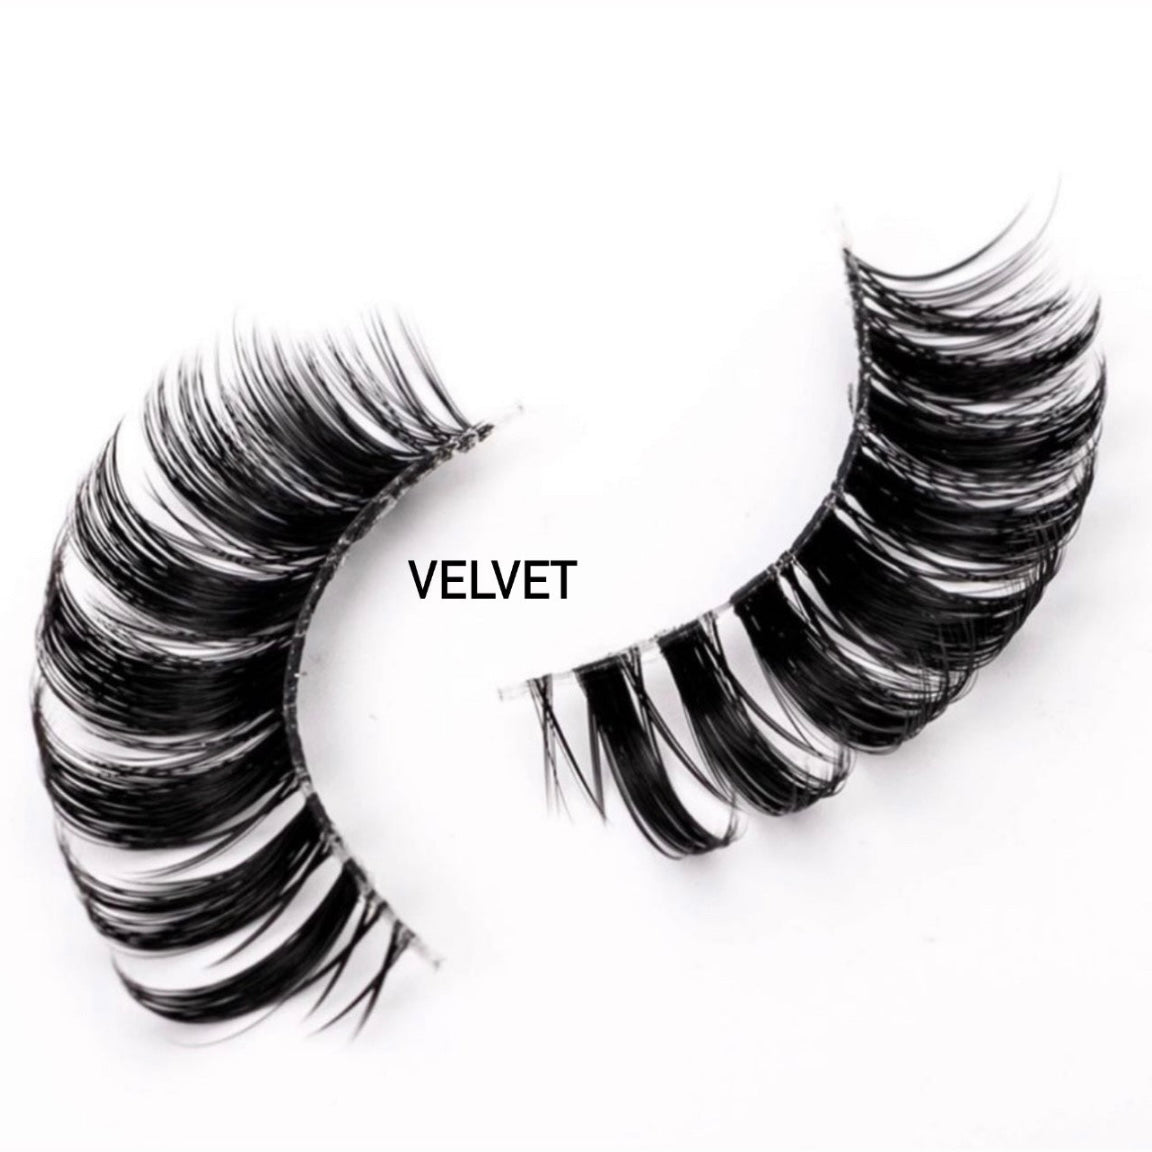 Velvet - lashes